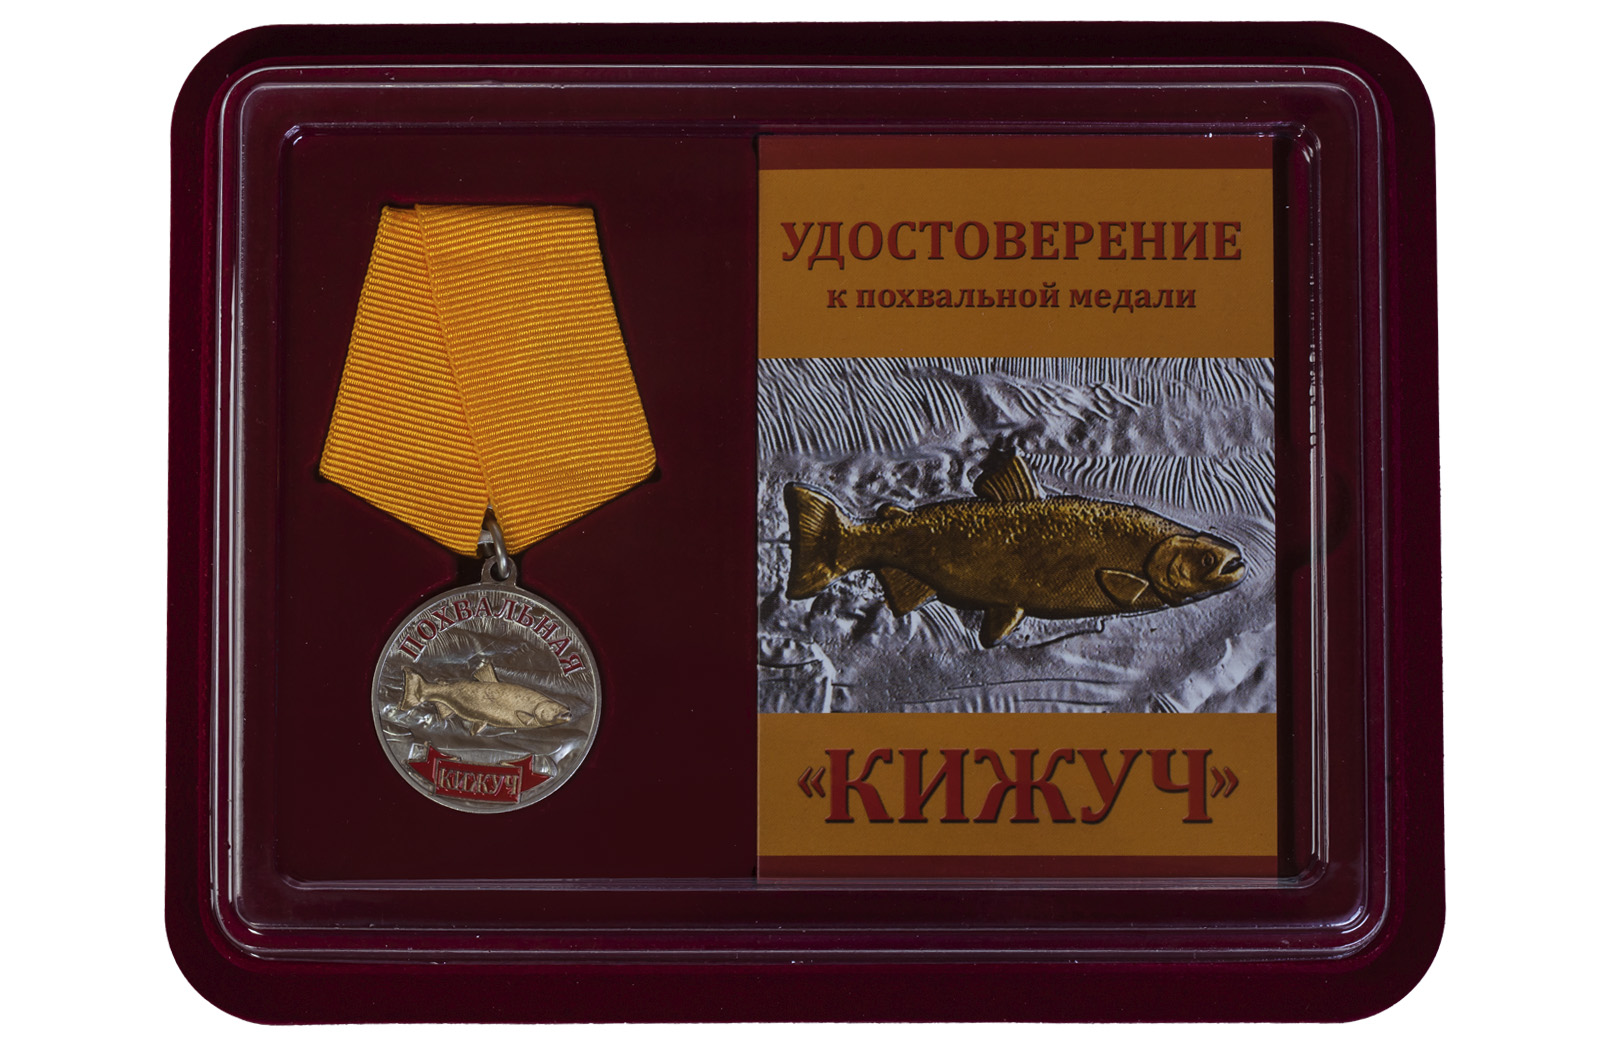 Медаль Похвальная Кижуч заказать в розницу или оптом